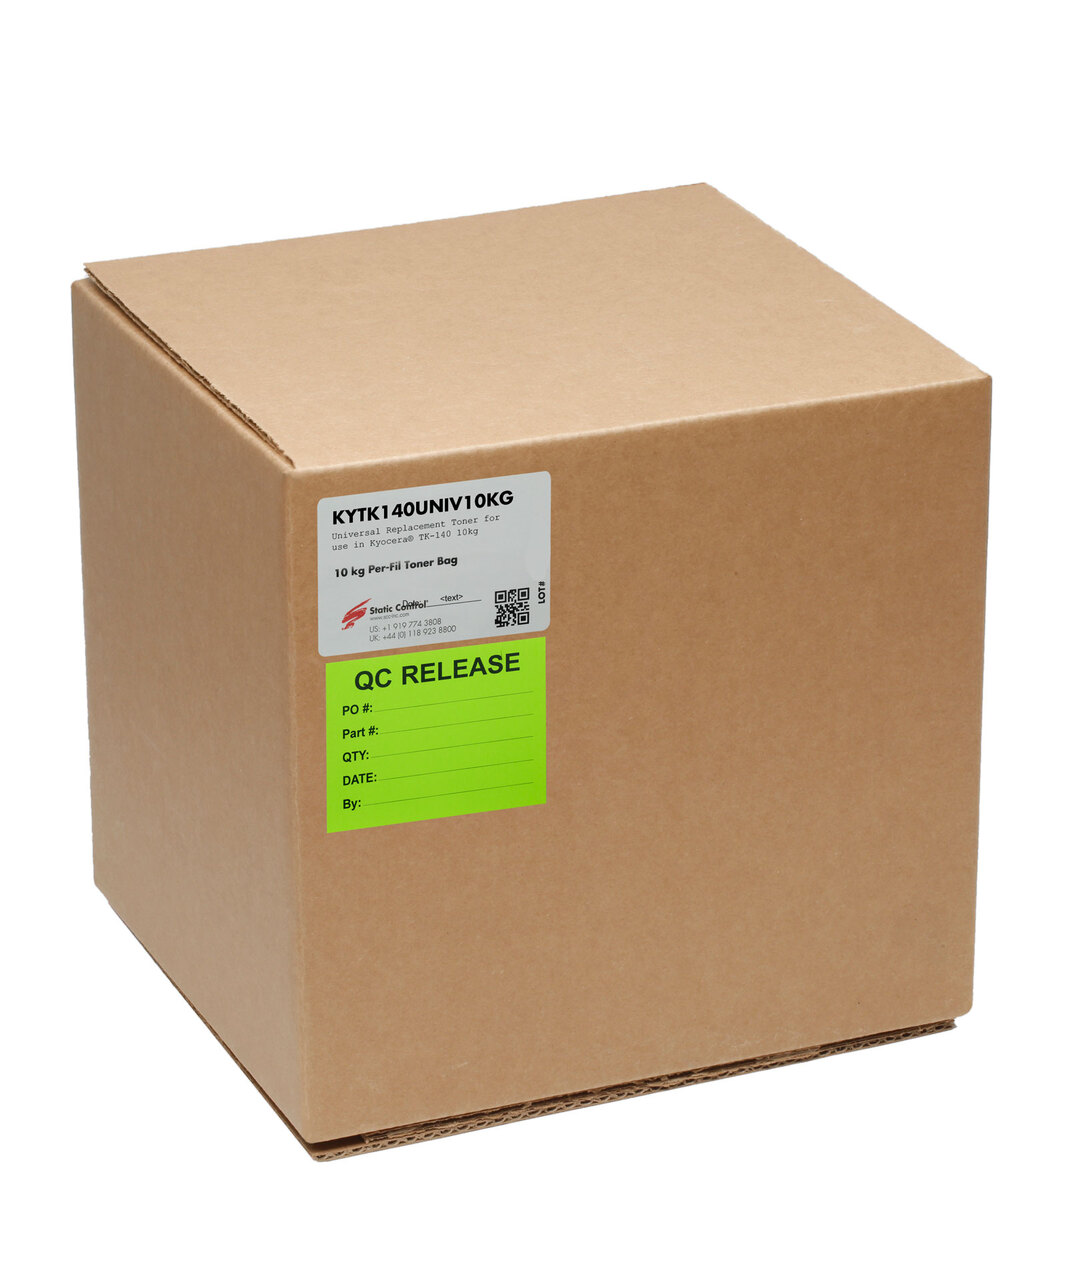 Тонер Static Control для Kyocera FS-1030/1100/1120/1300(TK-140), 10 кг, коробка KYTK140UNIV10KG